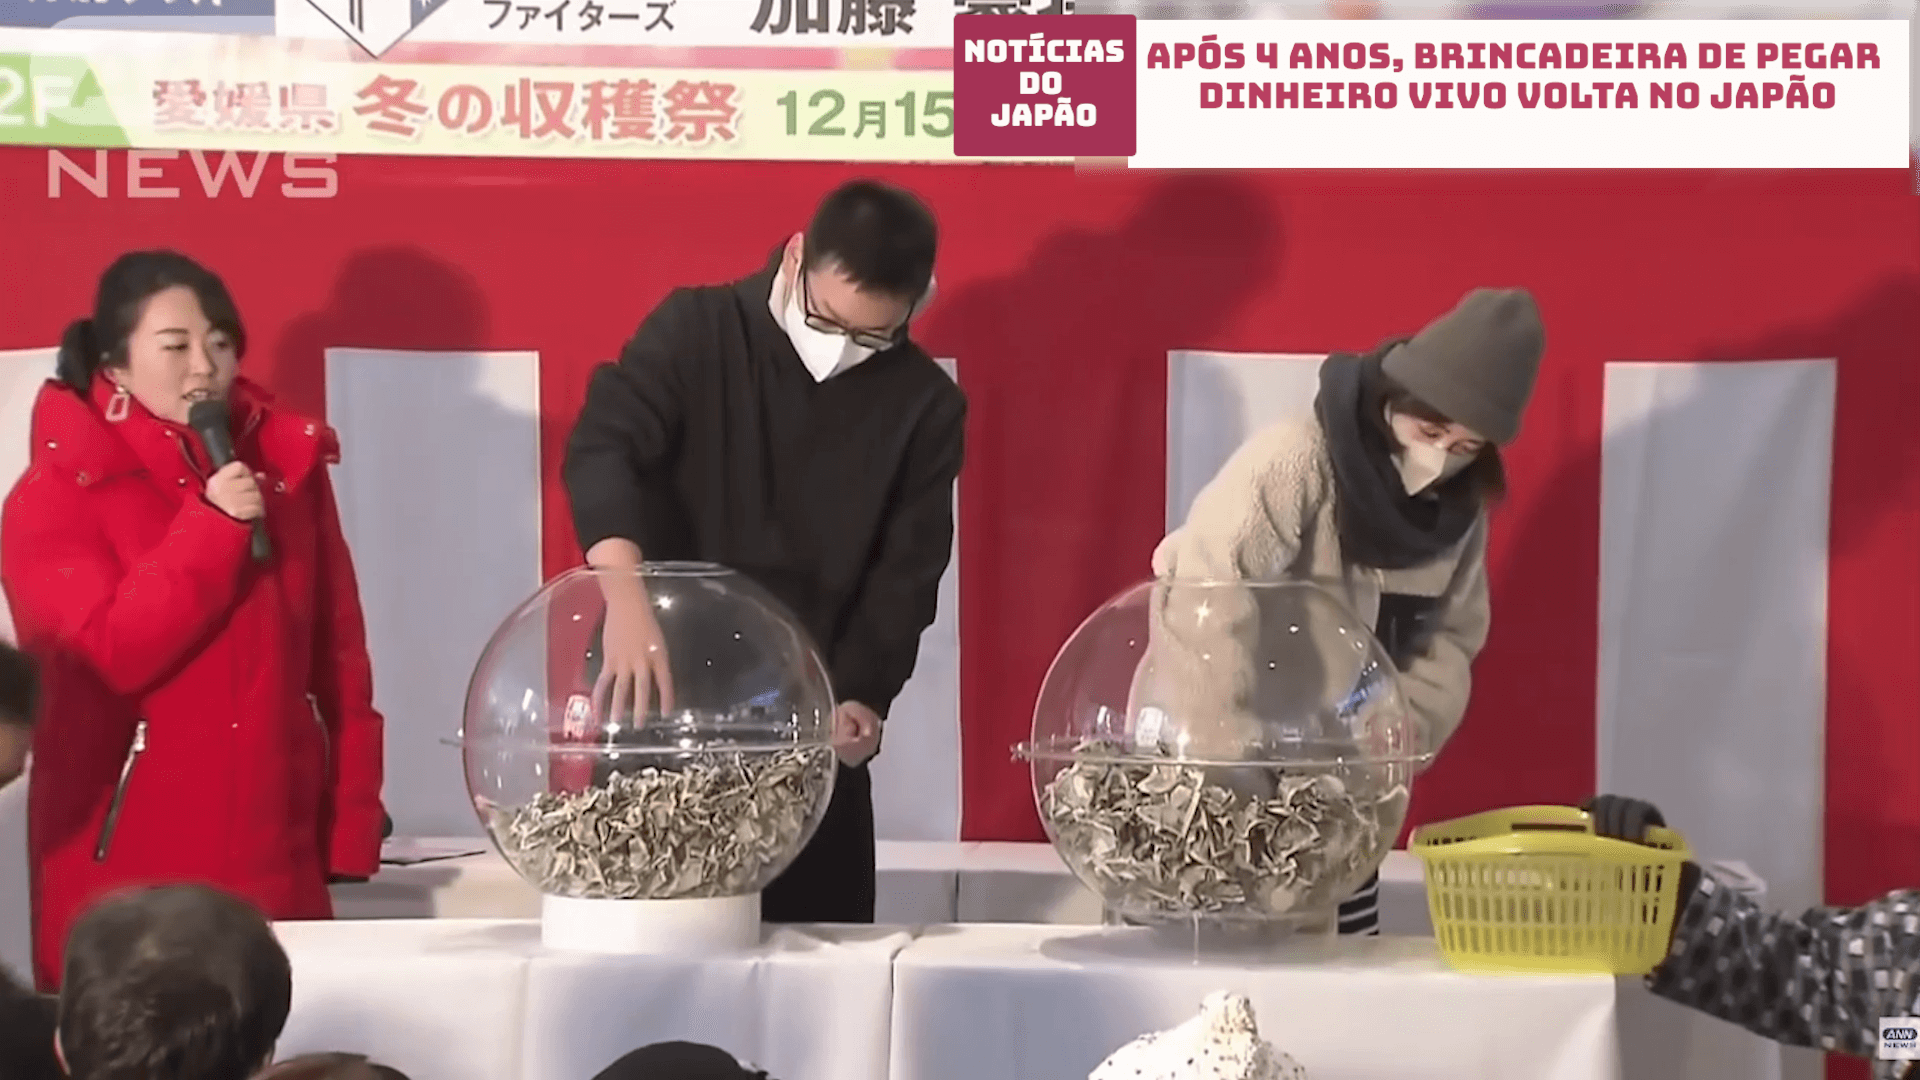 Após 4 anos, brincadeira de pegar dinheiro vivo volta no Japão